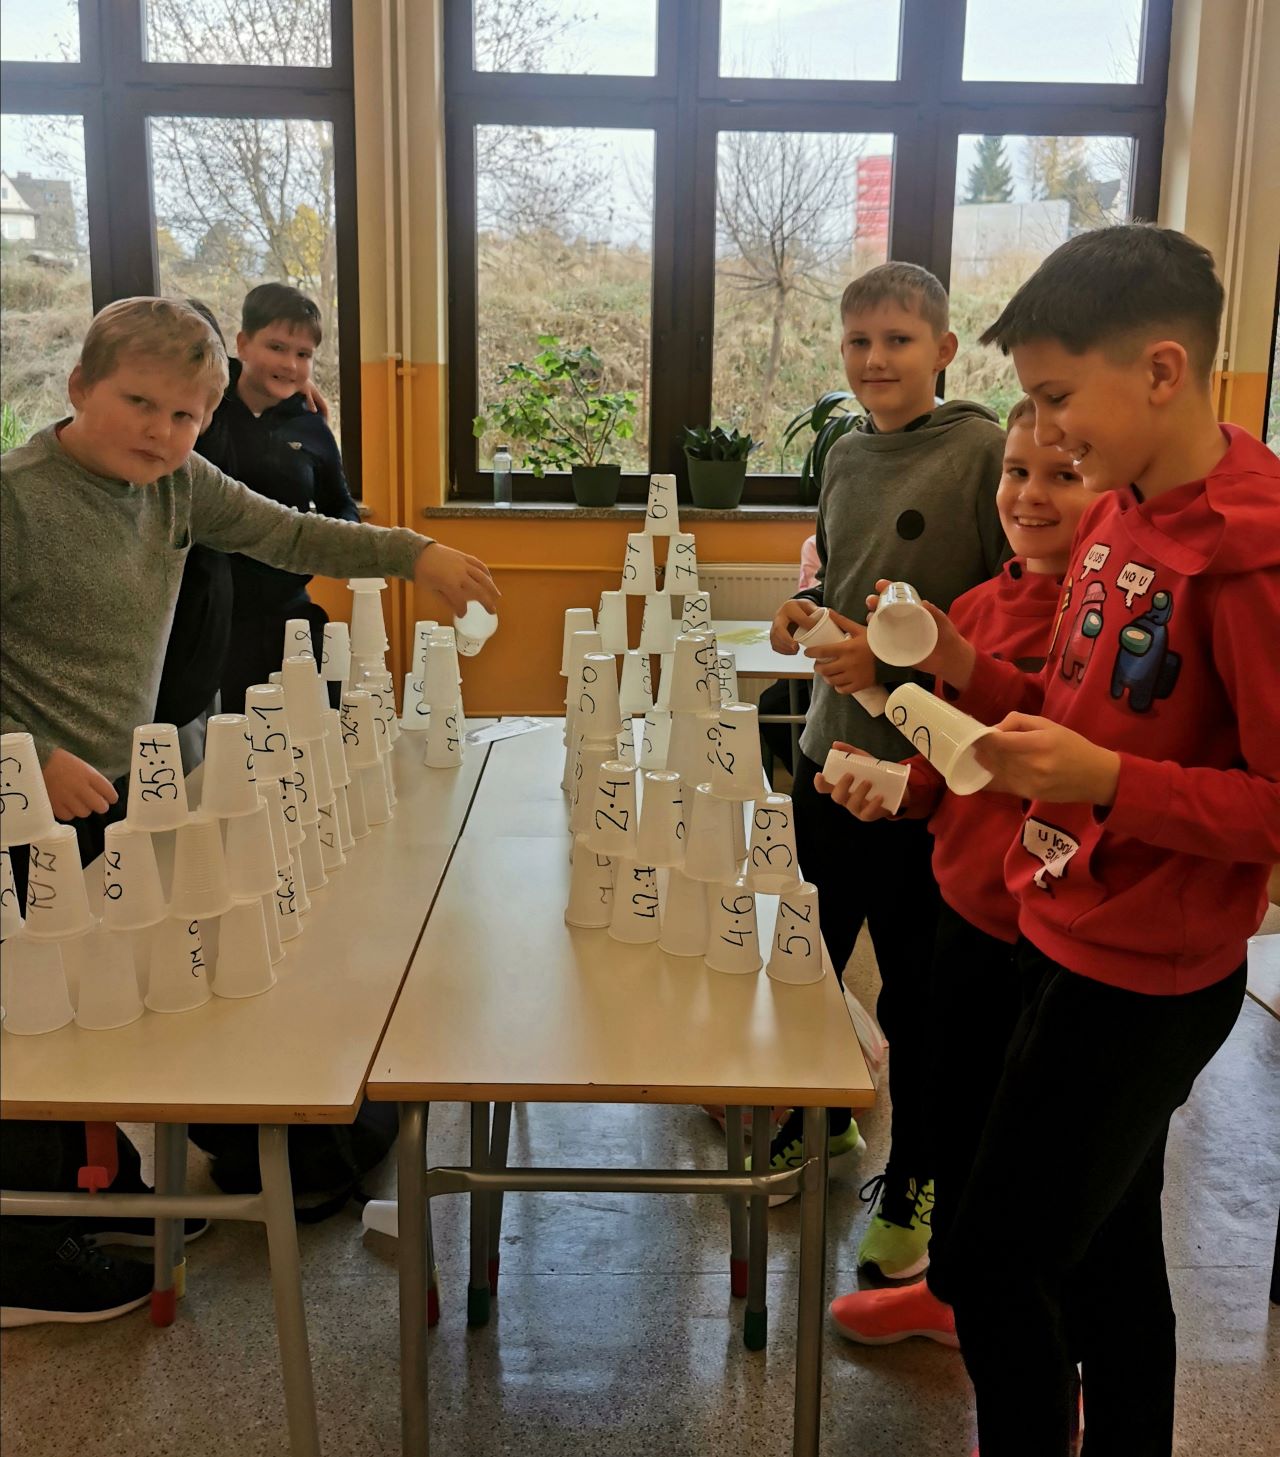 Pięcioro uczniów klasy piątej stoi przy stolikach  i układa wieże z plastikowych kubeczków. Na kubeczkach są napisane iloczyny lub ilorazy liczb